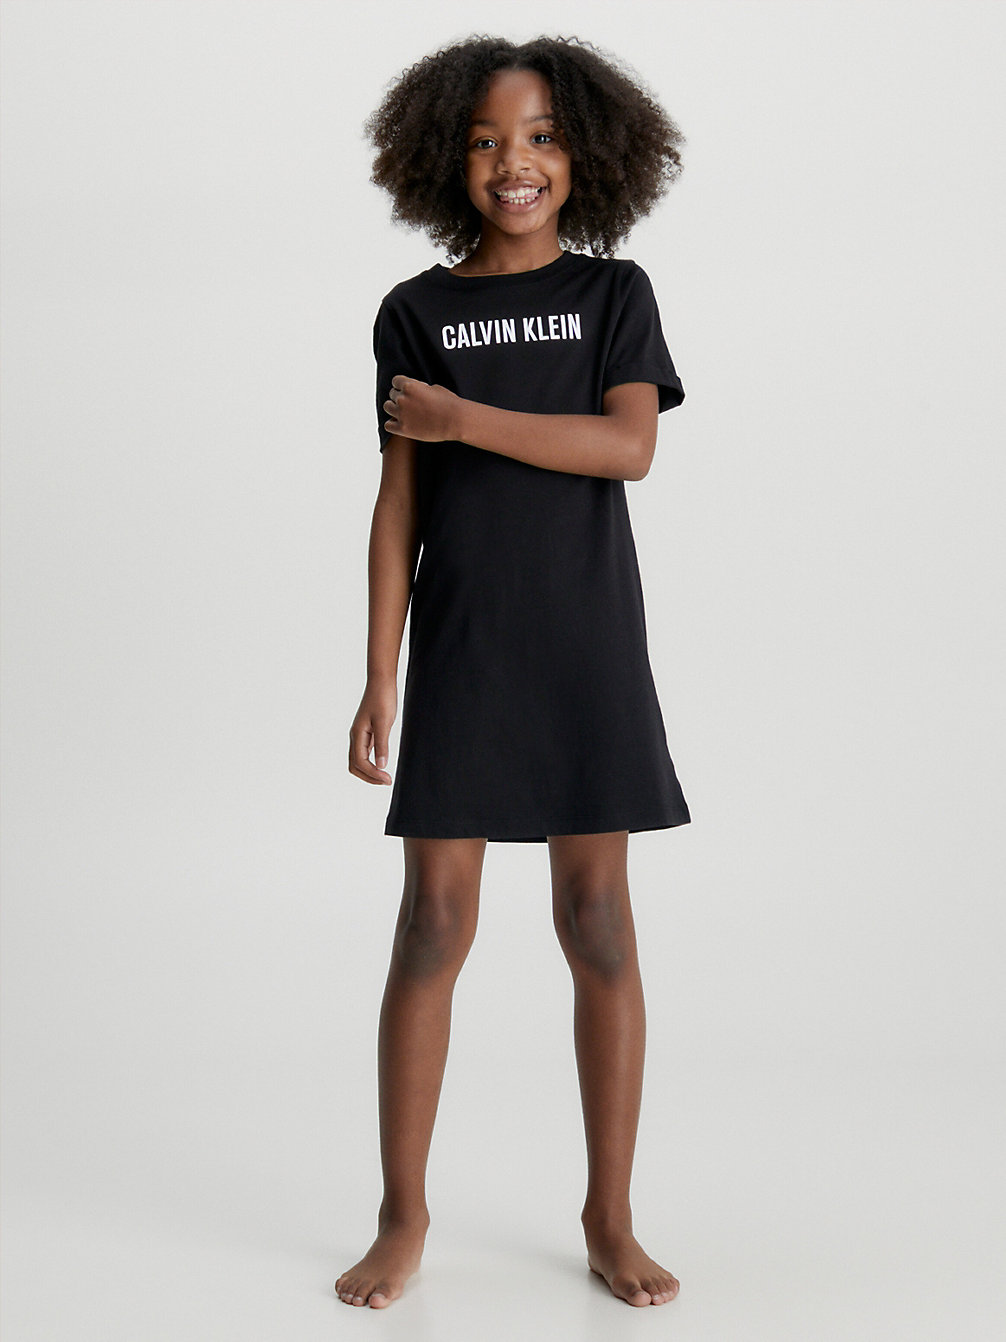 PVH BLACK Strandkleid Für Mädchen - Intense Power undefined Maedchen Calvin Klein